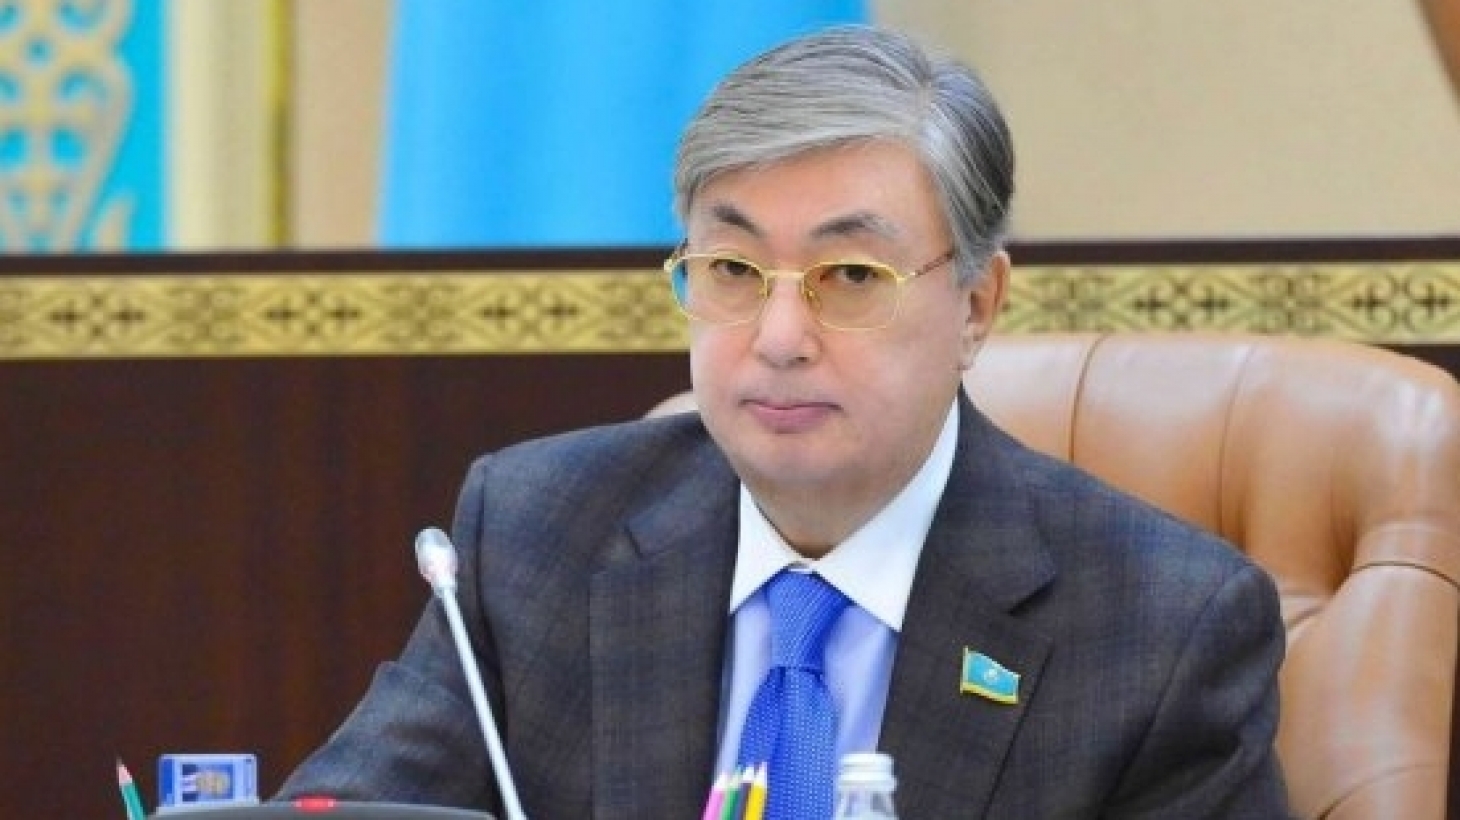 Токаев выступил с первой речью на посту президента Казахстана и сделал неожиданное предложение